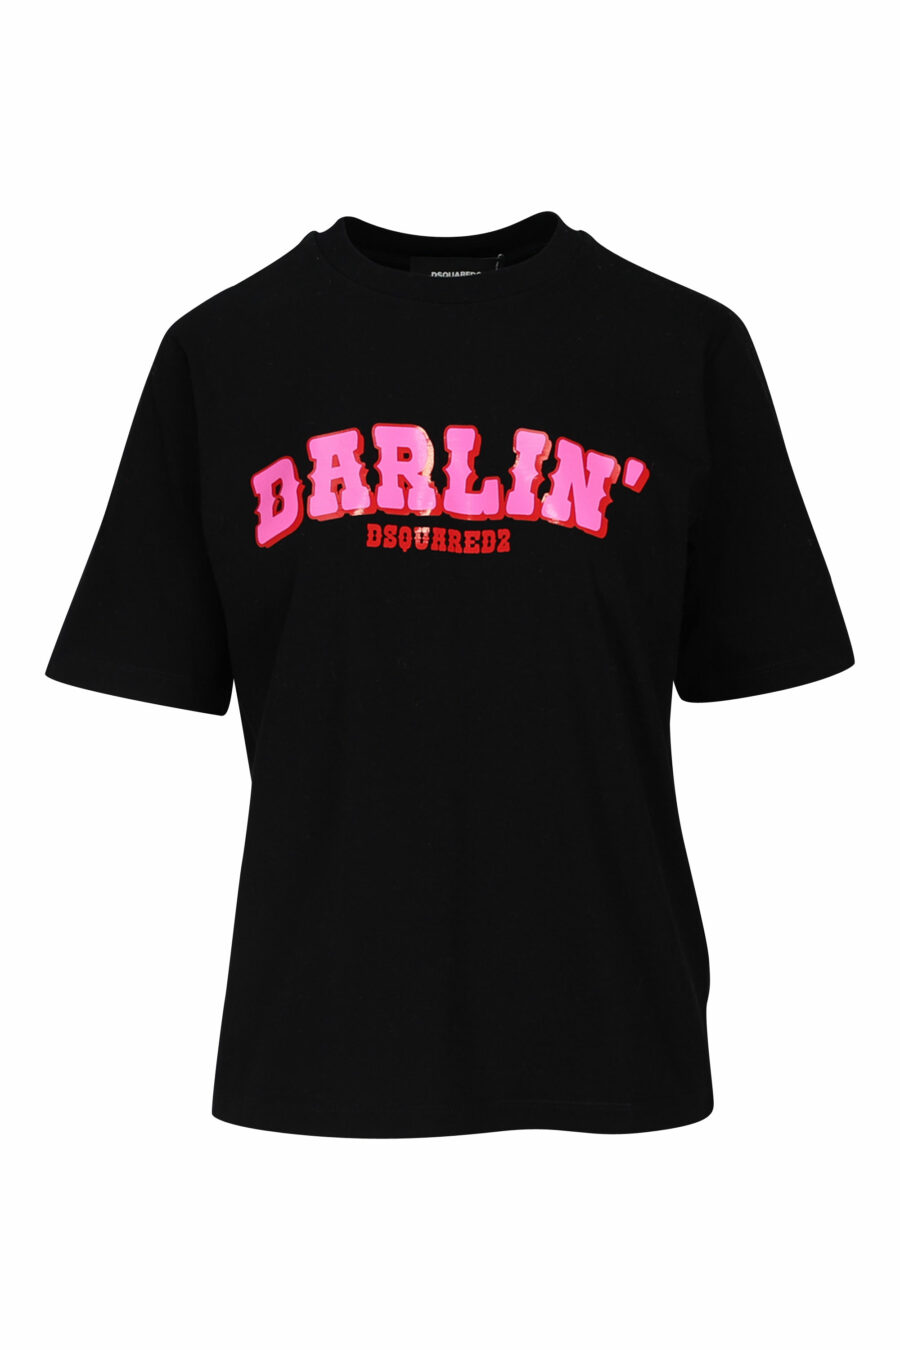 Schwarzes T-Shirt mit fuchsiafarbenem "Darlin"-Maxilogo - 8054148193522